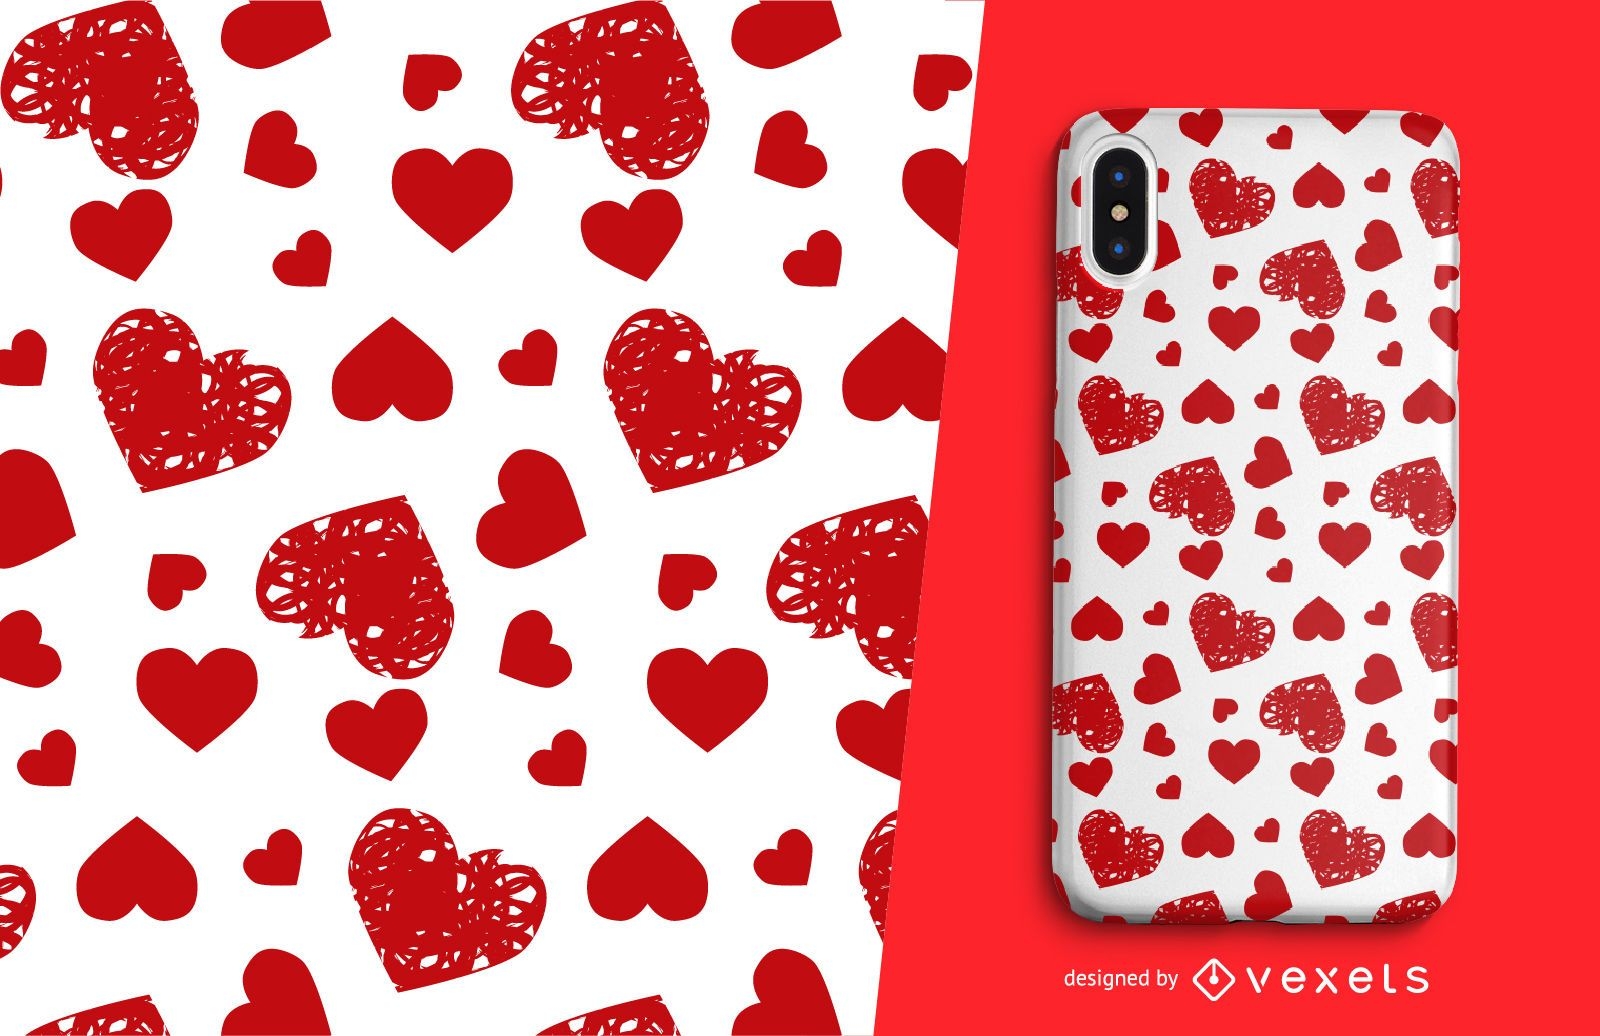 Valentine's stamped hearts pattern